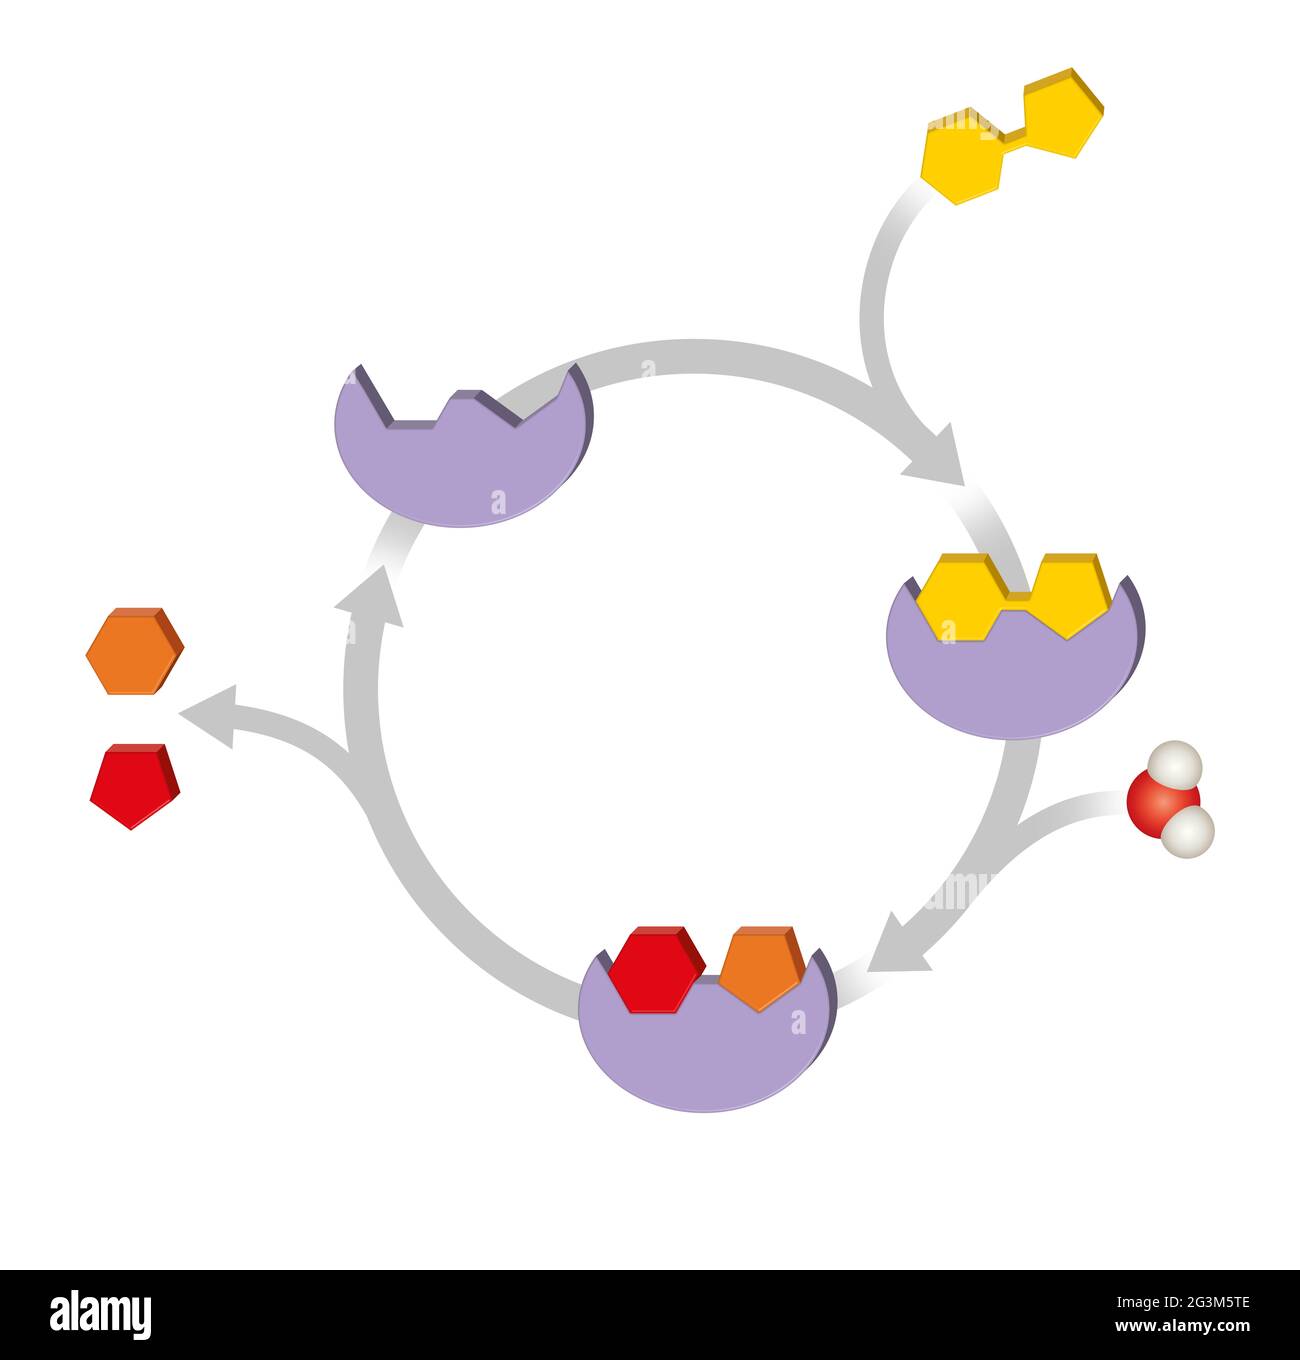 Fonction enzymatique. Catalyseurs biologiques macromoléculaires Banque D'Images